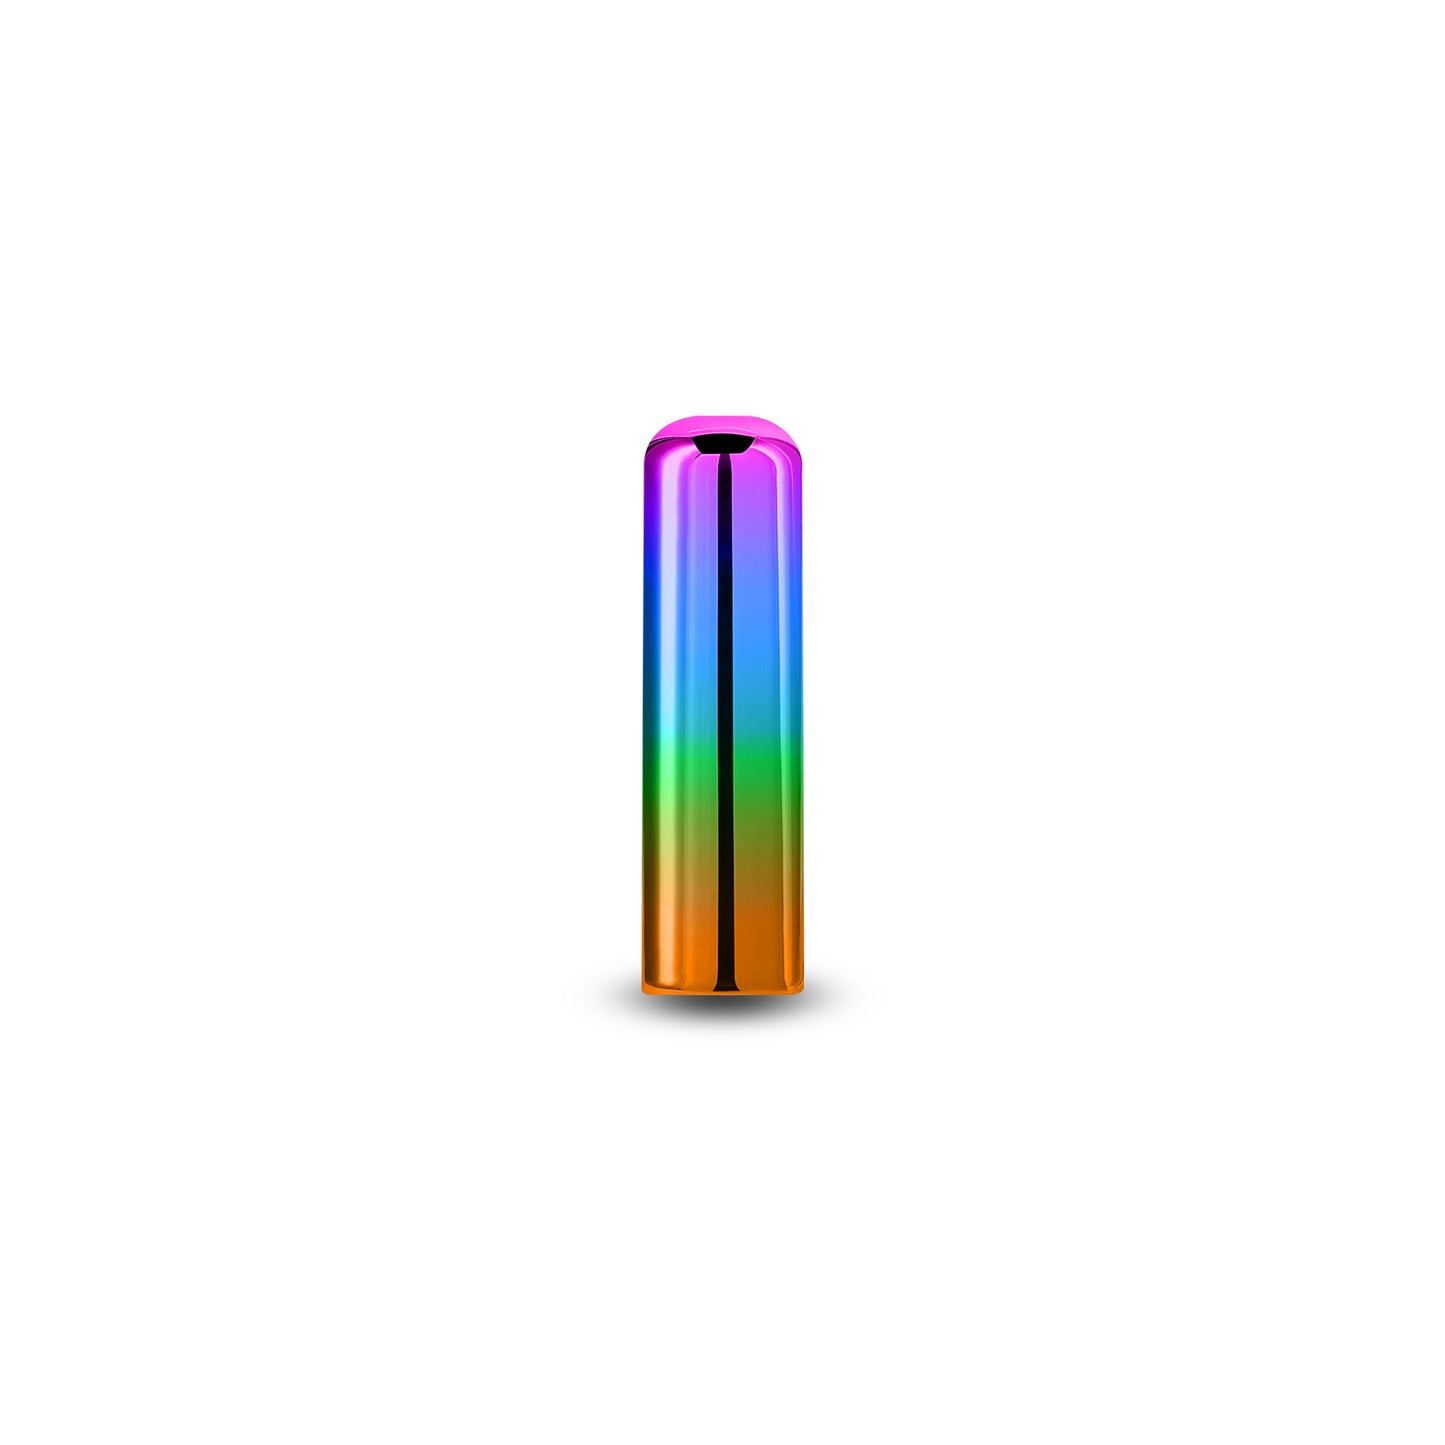 Chroma - Rainbow - All Sizes